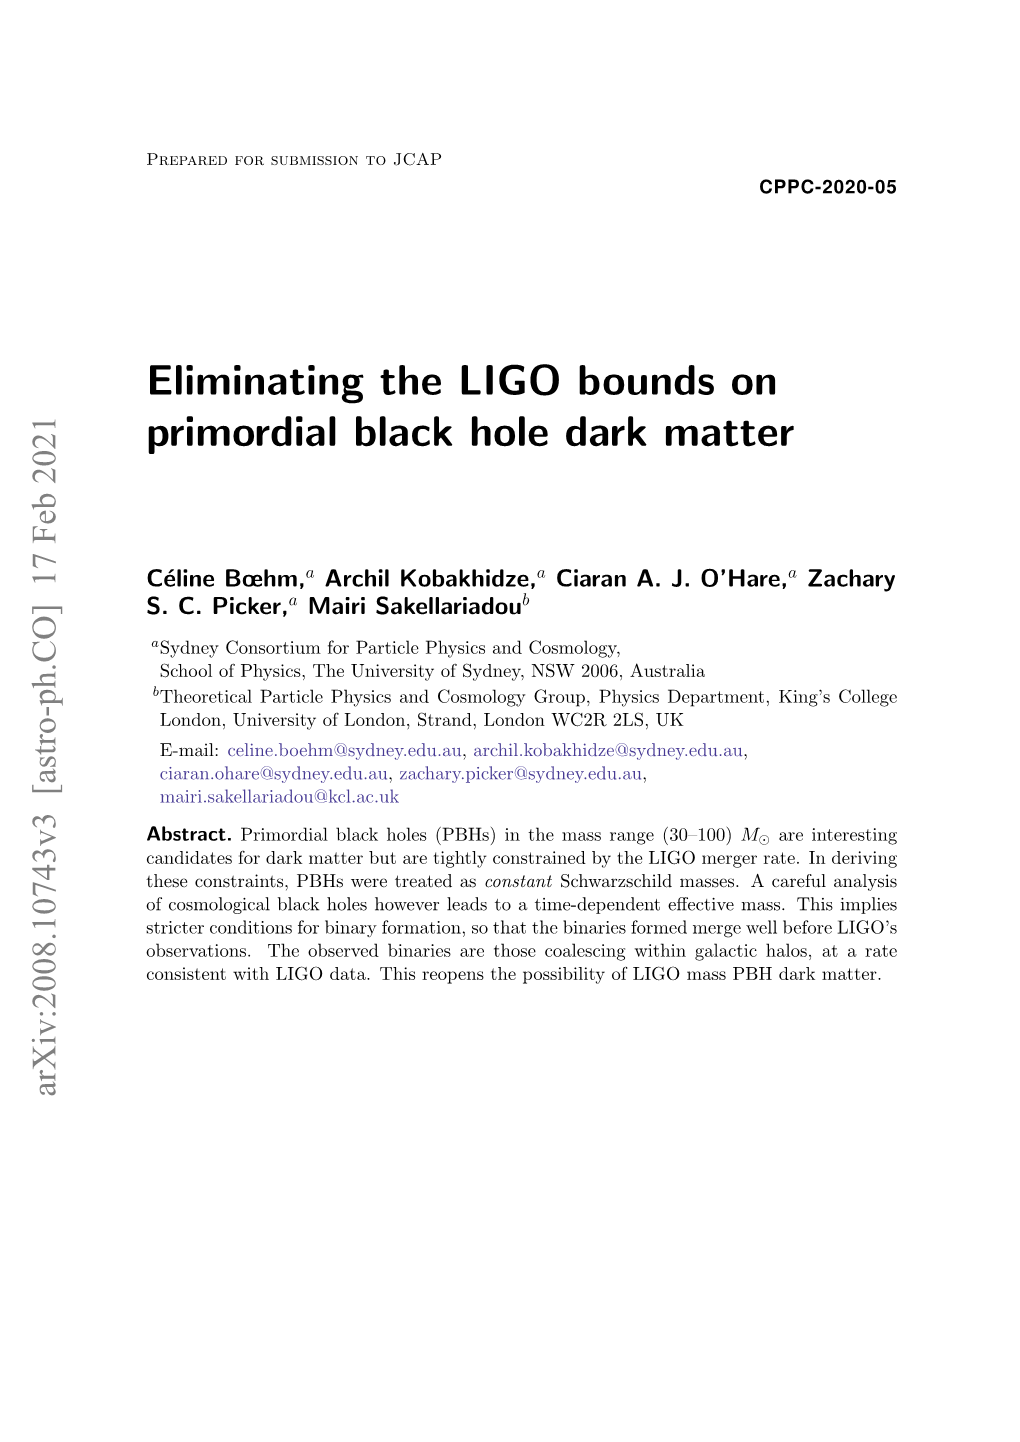 Eliminating the LIGO Bounds on Primordial Black Hole Dark Matter